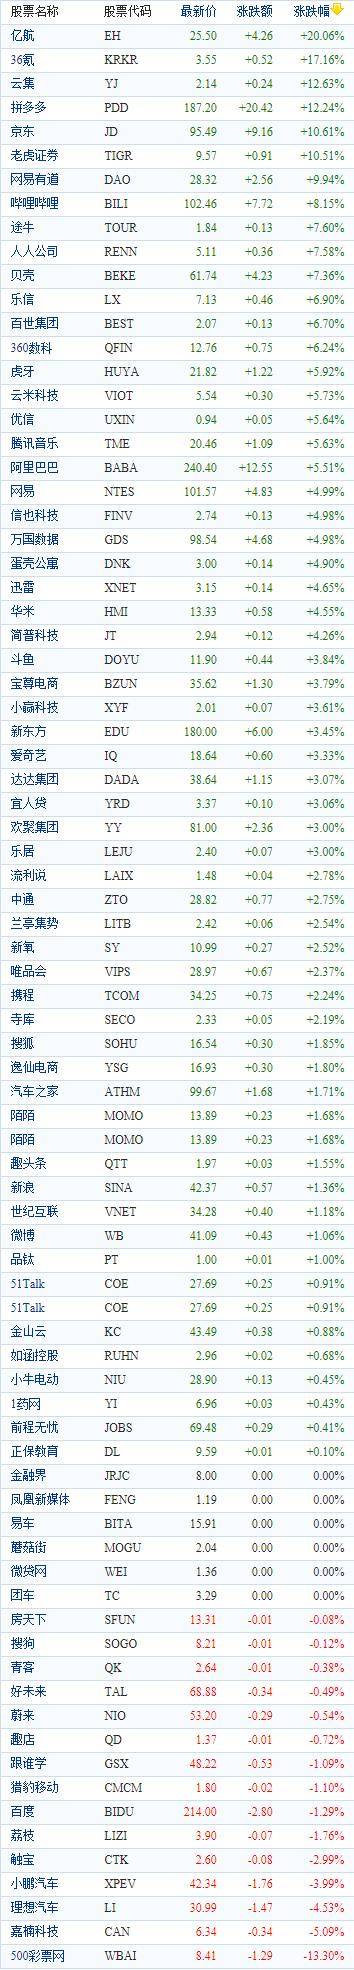 中国大多数概念股周二收盘 品多多和JD.COM双双上涨超过10%